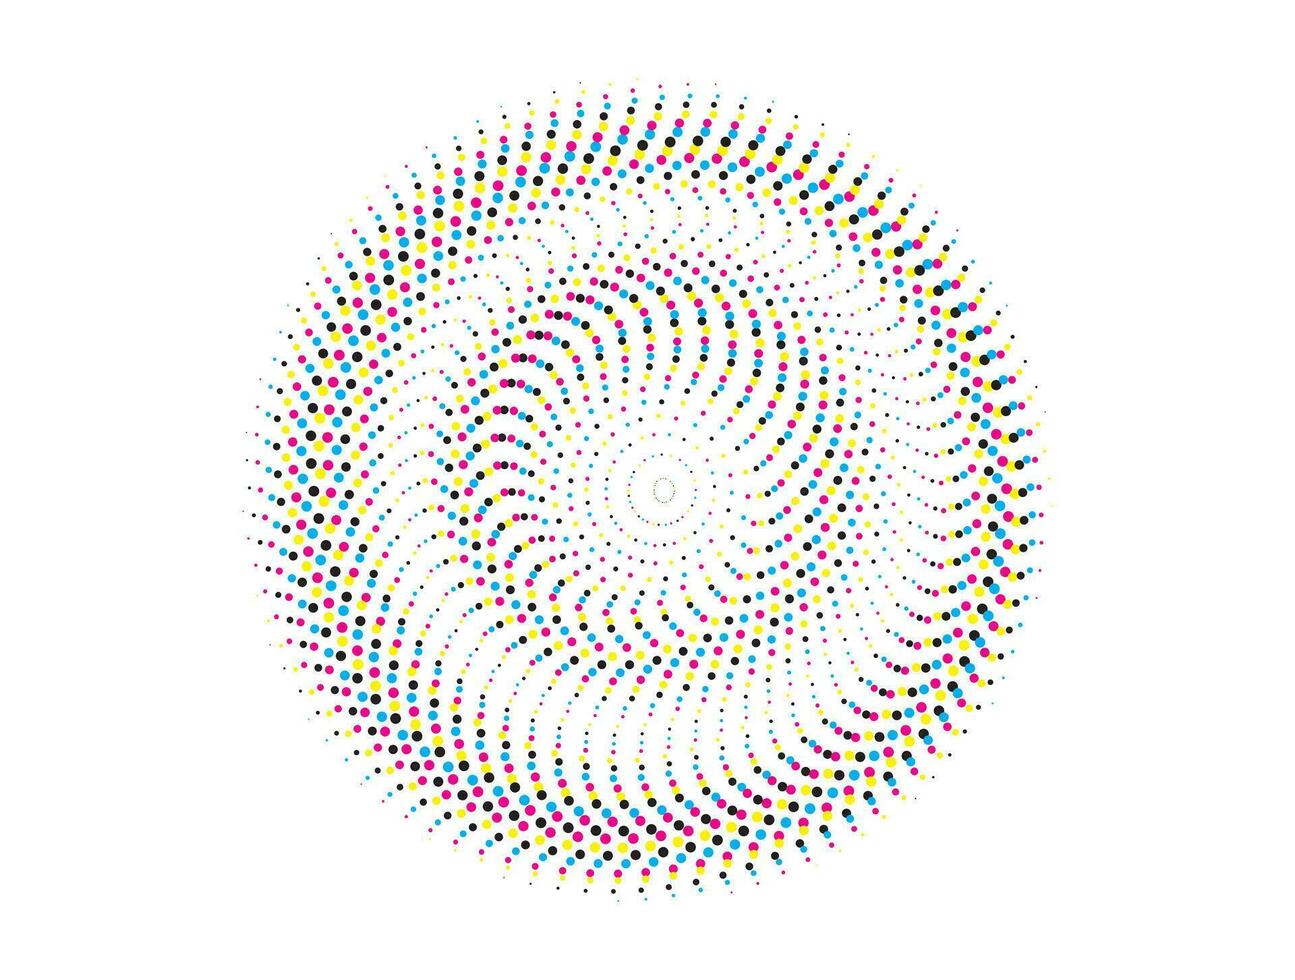 en cirkulär mönster av färgad prickar på en vit bakgrund, en cirkulär mönster med färgrik prickar på Det, cmyk cirklar, vektor illustration av en blomma